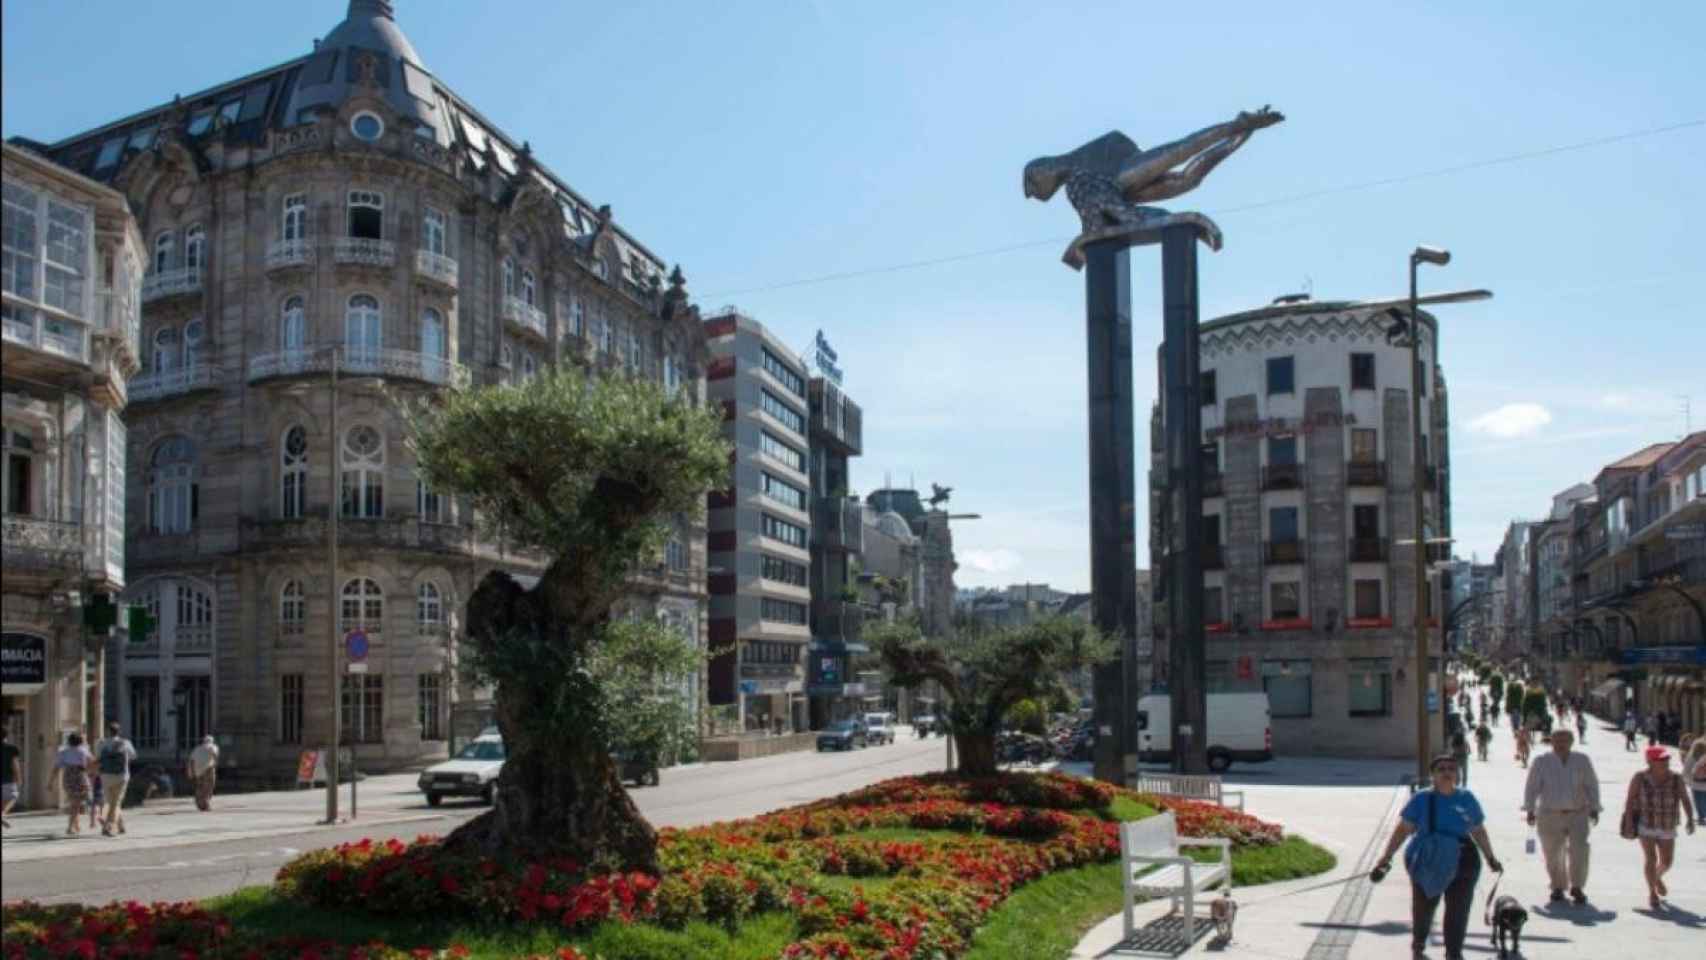 Vigo, la ciudad grande con mejor calidad de vida según la encuesta de la OCU / TURISMO DE VIGO